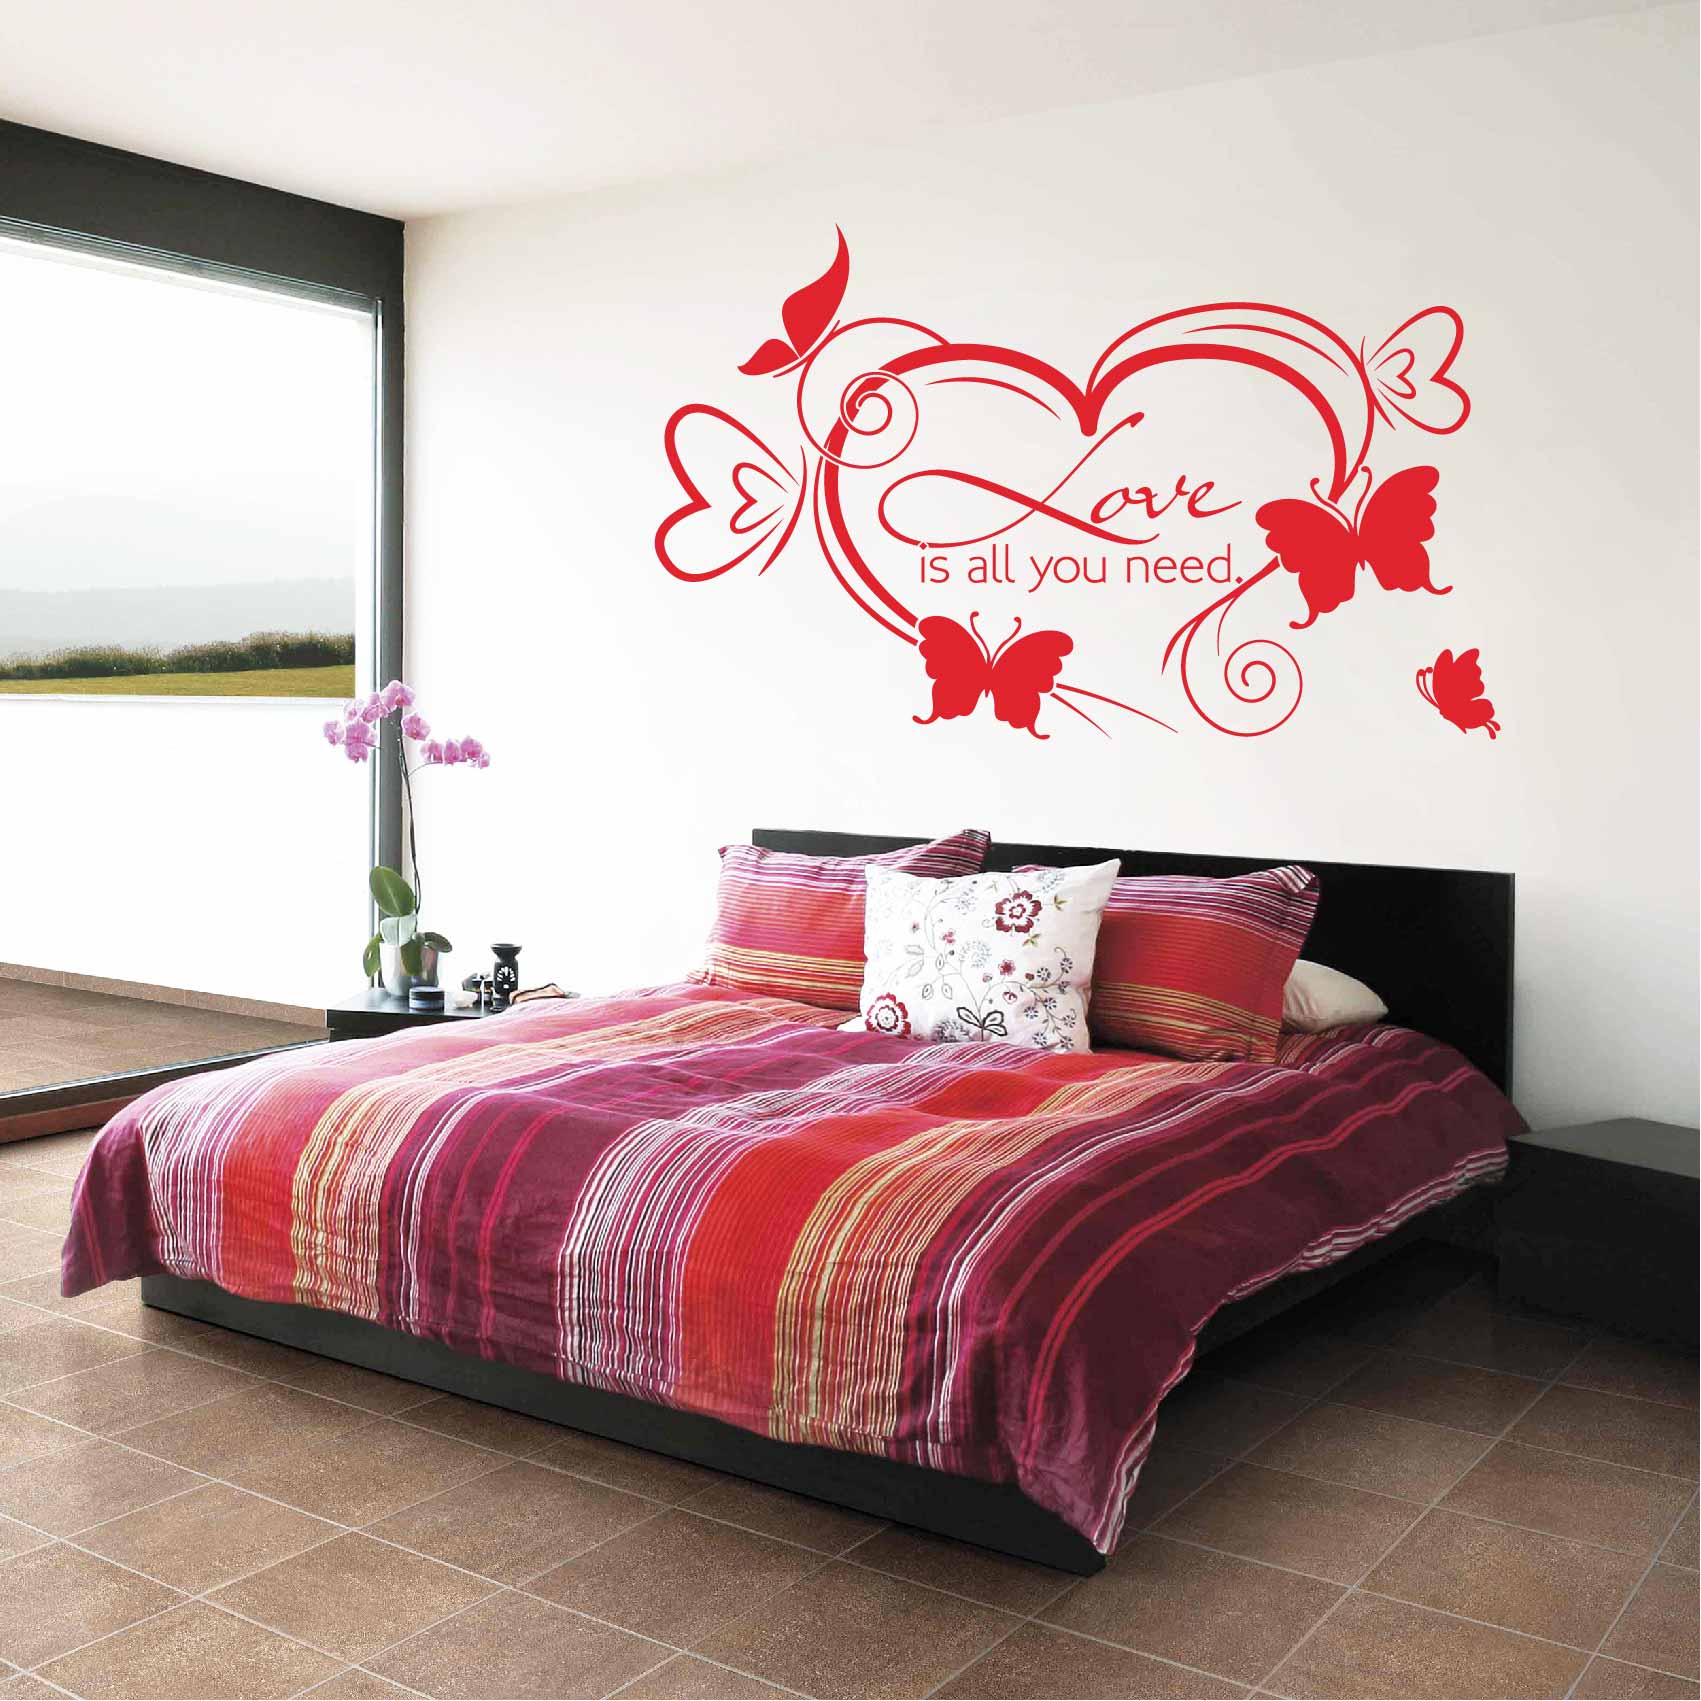 Décorez votre salon ou chambre avec des beaux stickers romantiques